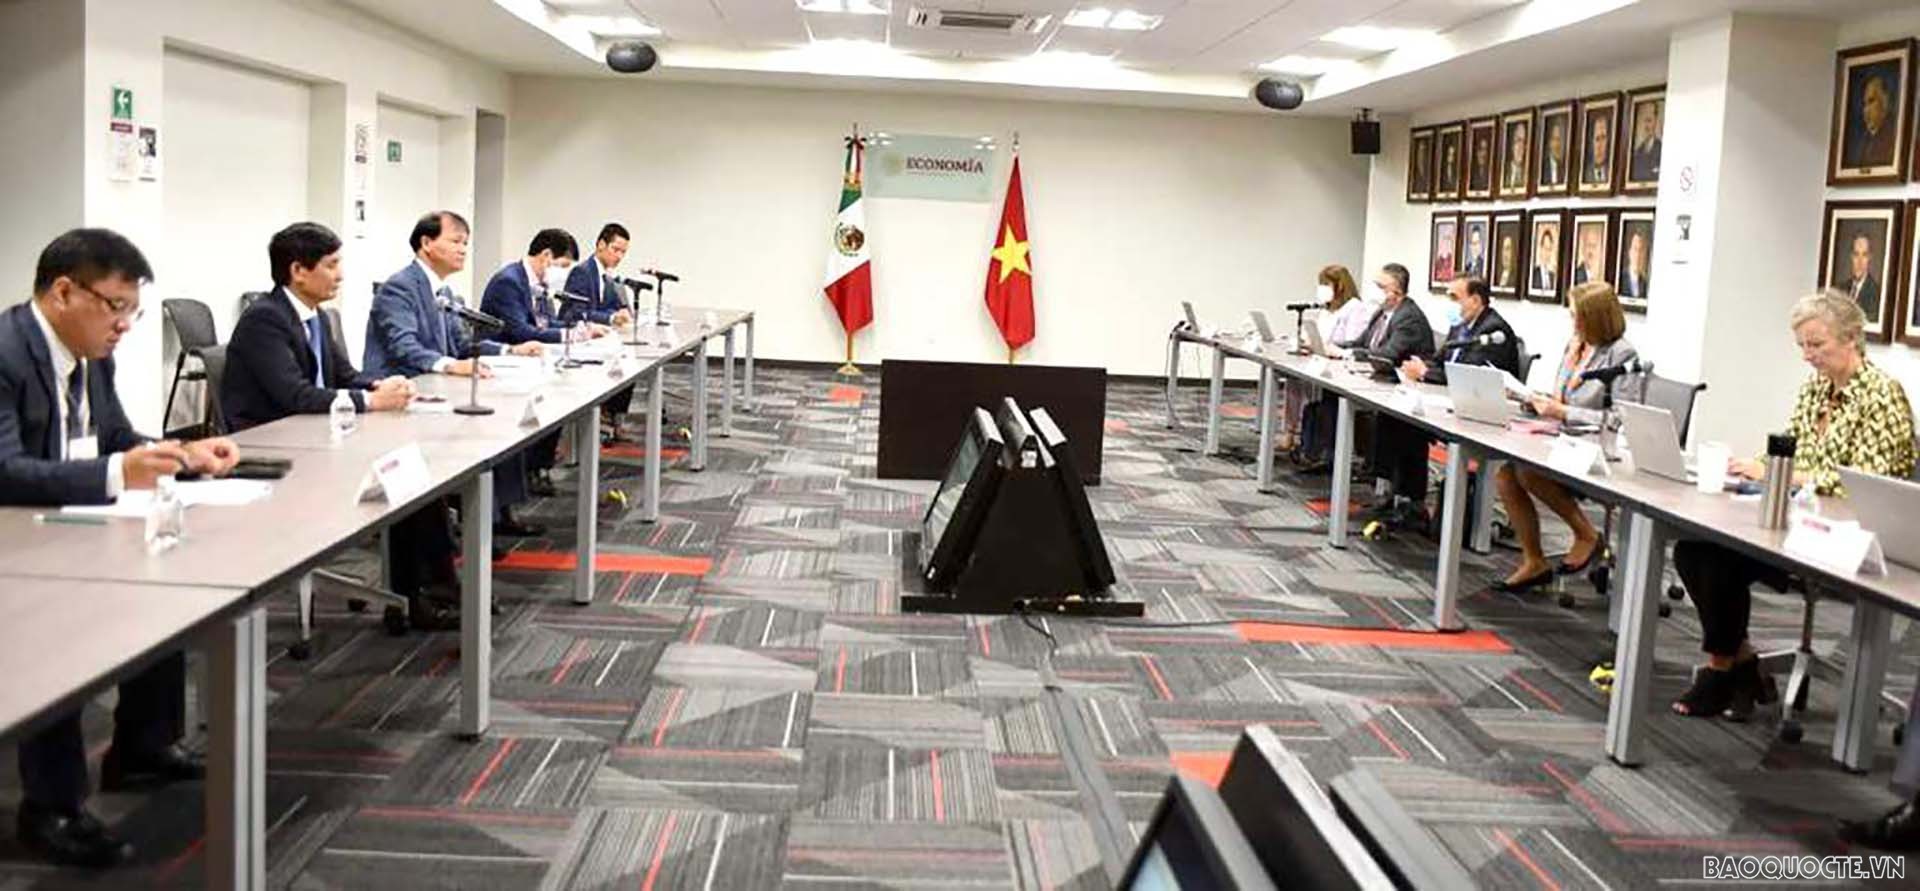 Thứ trưởng Bộ Công Thương Đỗ Thắng Hải àm việc với Chủ nhiệm Ủy ban Kinh tế, thương mại và cạnh tranh của Quốc hội Mexico Jorge Ernesto Inzunza Armas.